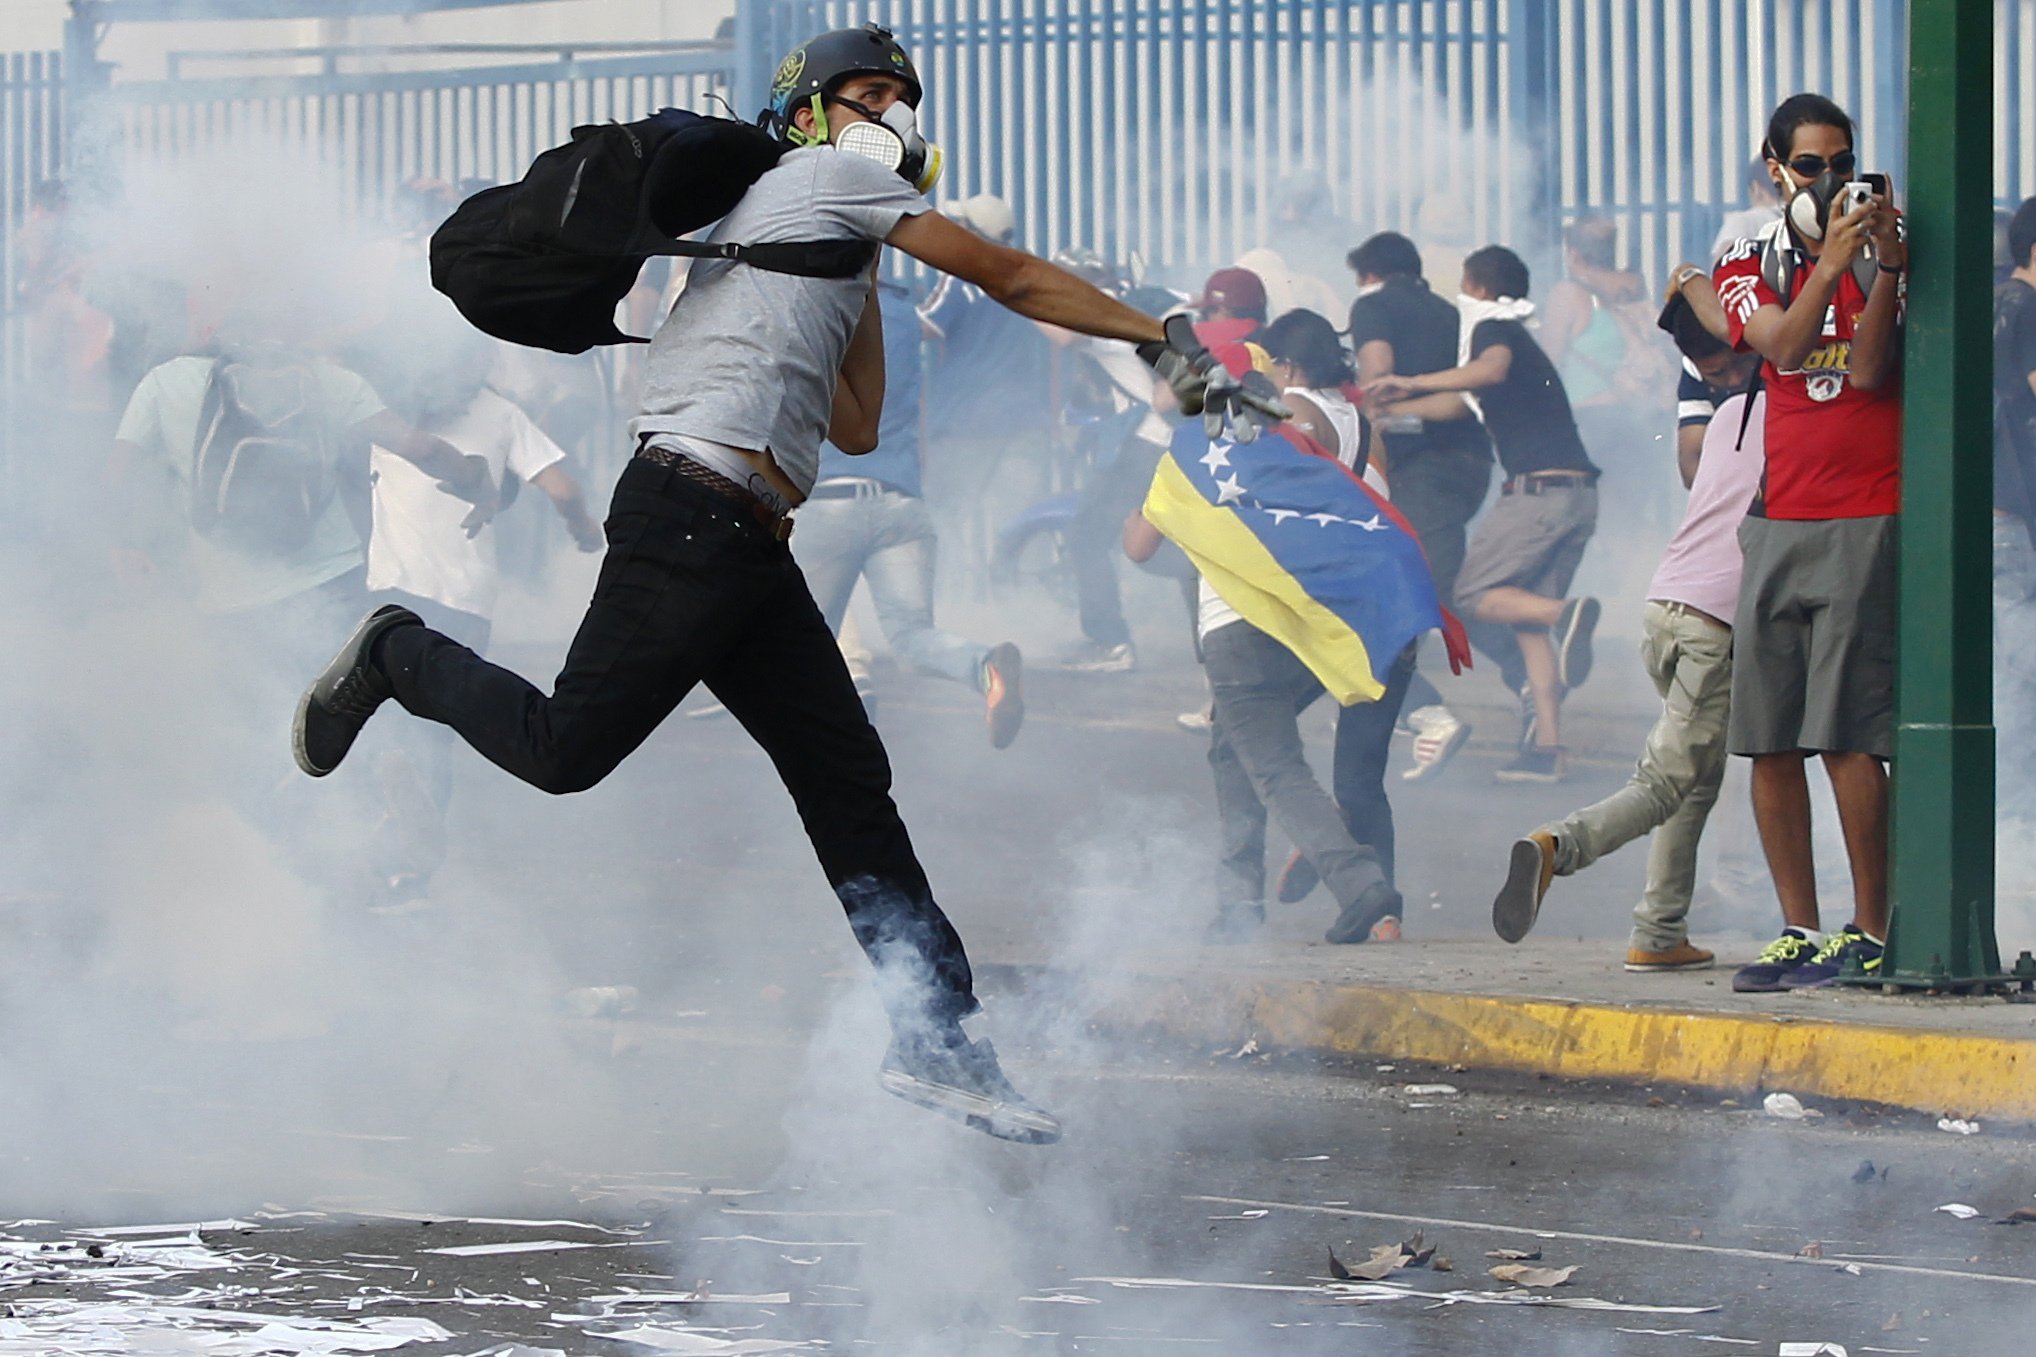 2014-02-19T230415Z_1078444267_GM1EA2K0JKO01_RTRMADP_3_VENEZUELA-PROTESTS